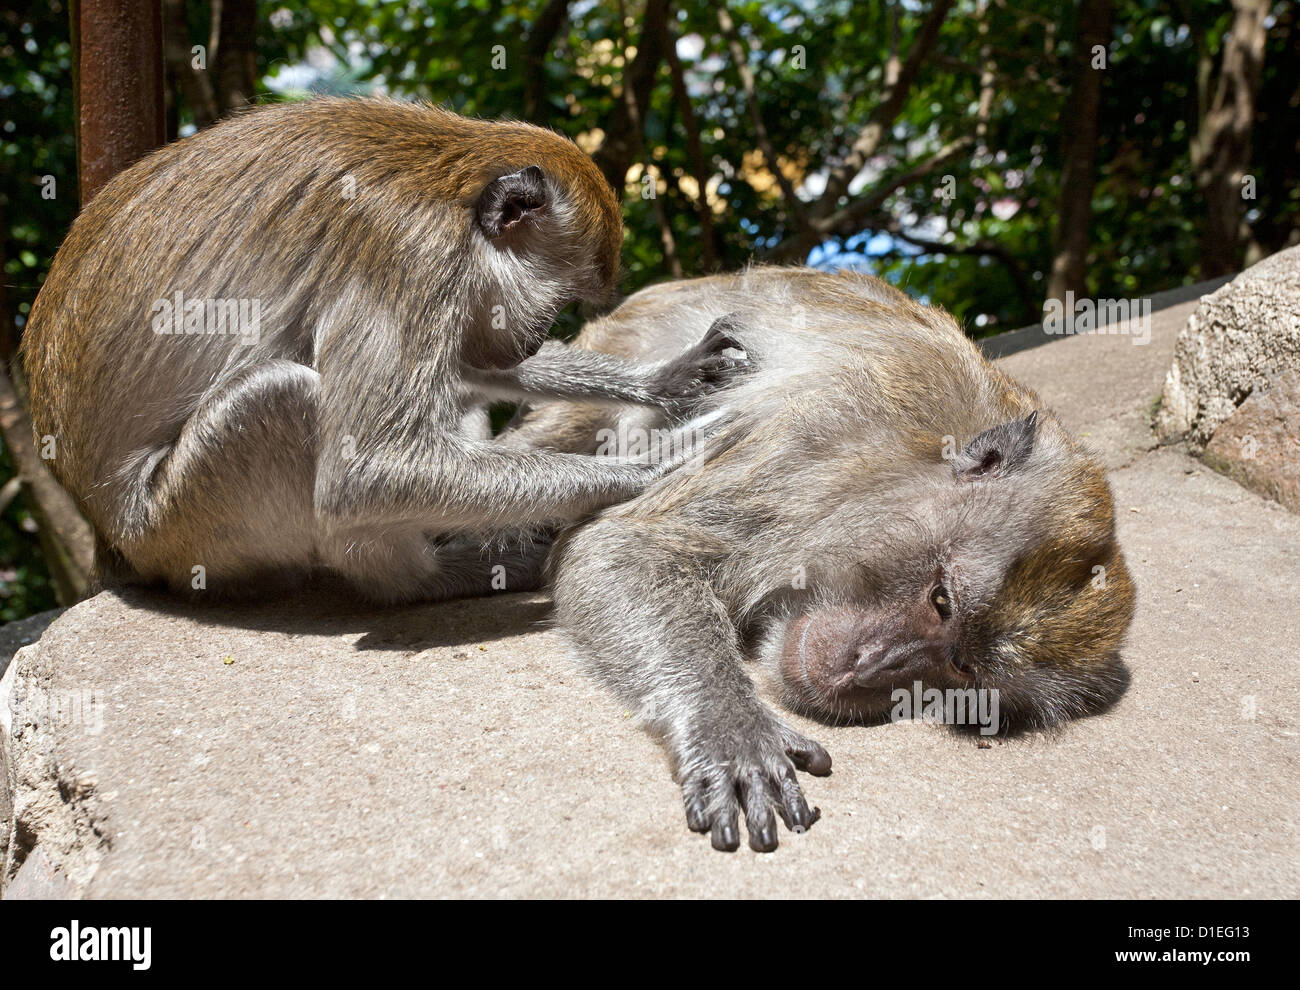 Monkey removing parasites. Batu caves. Malaysia Stock Photo